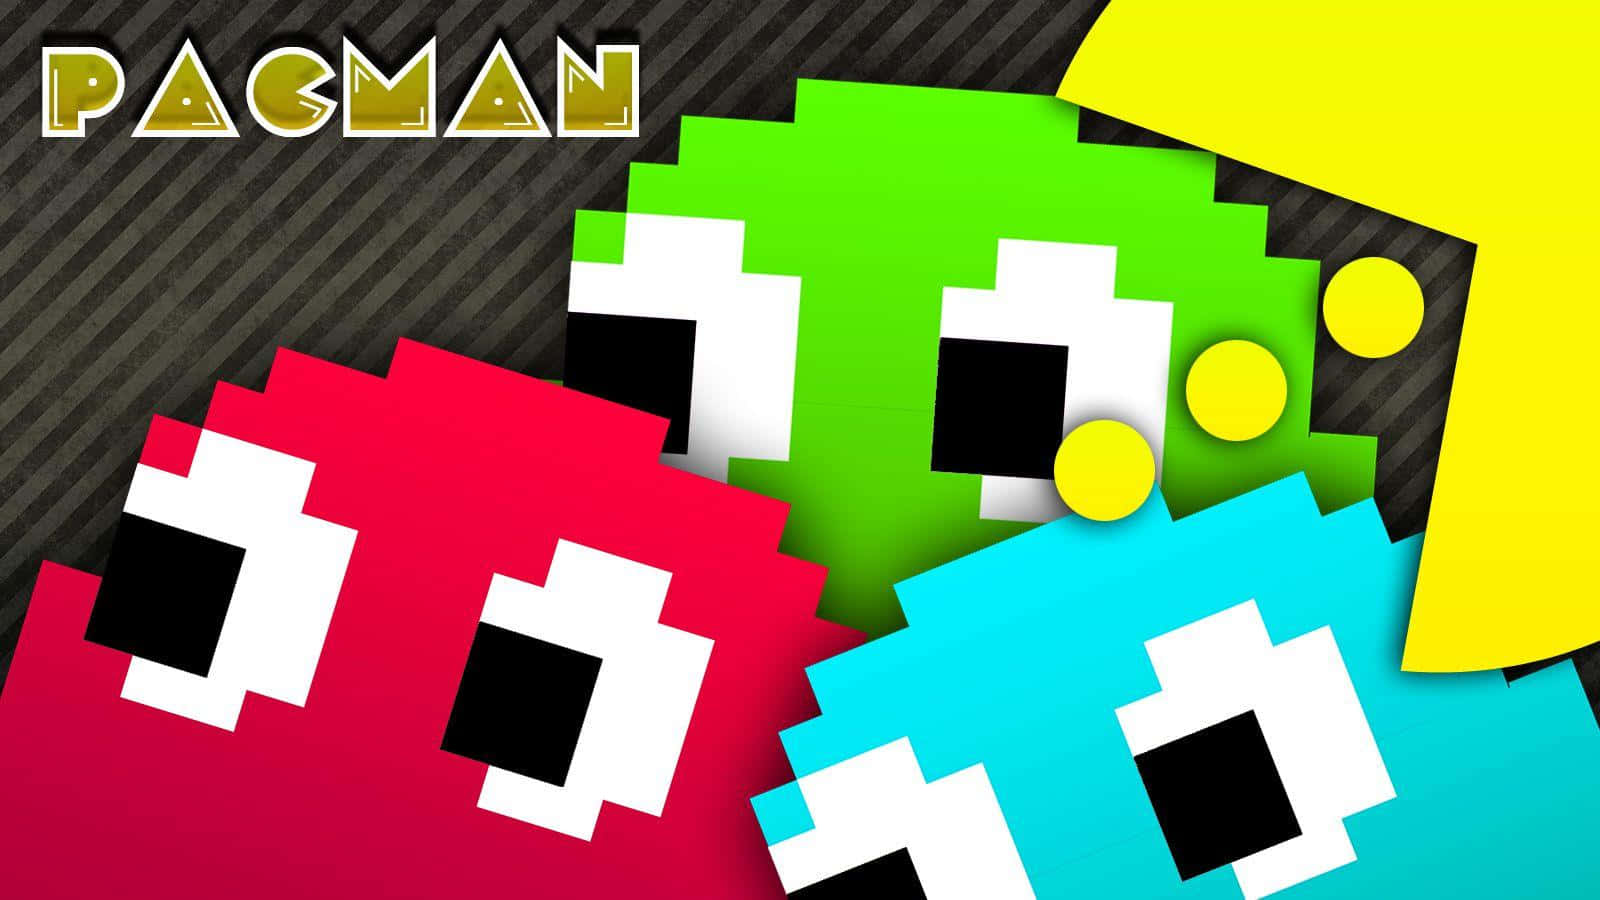 Pacman - Pacman - Pacman - Pacman - Pacman - Pacman - Pac Wallpaper